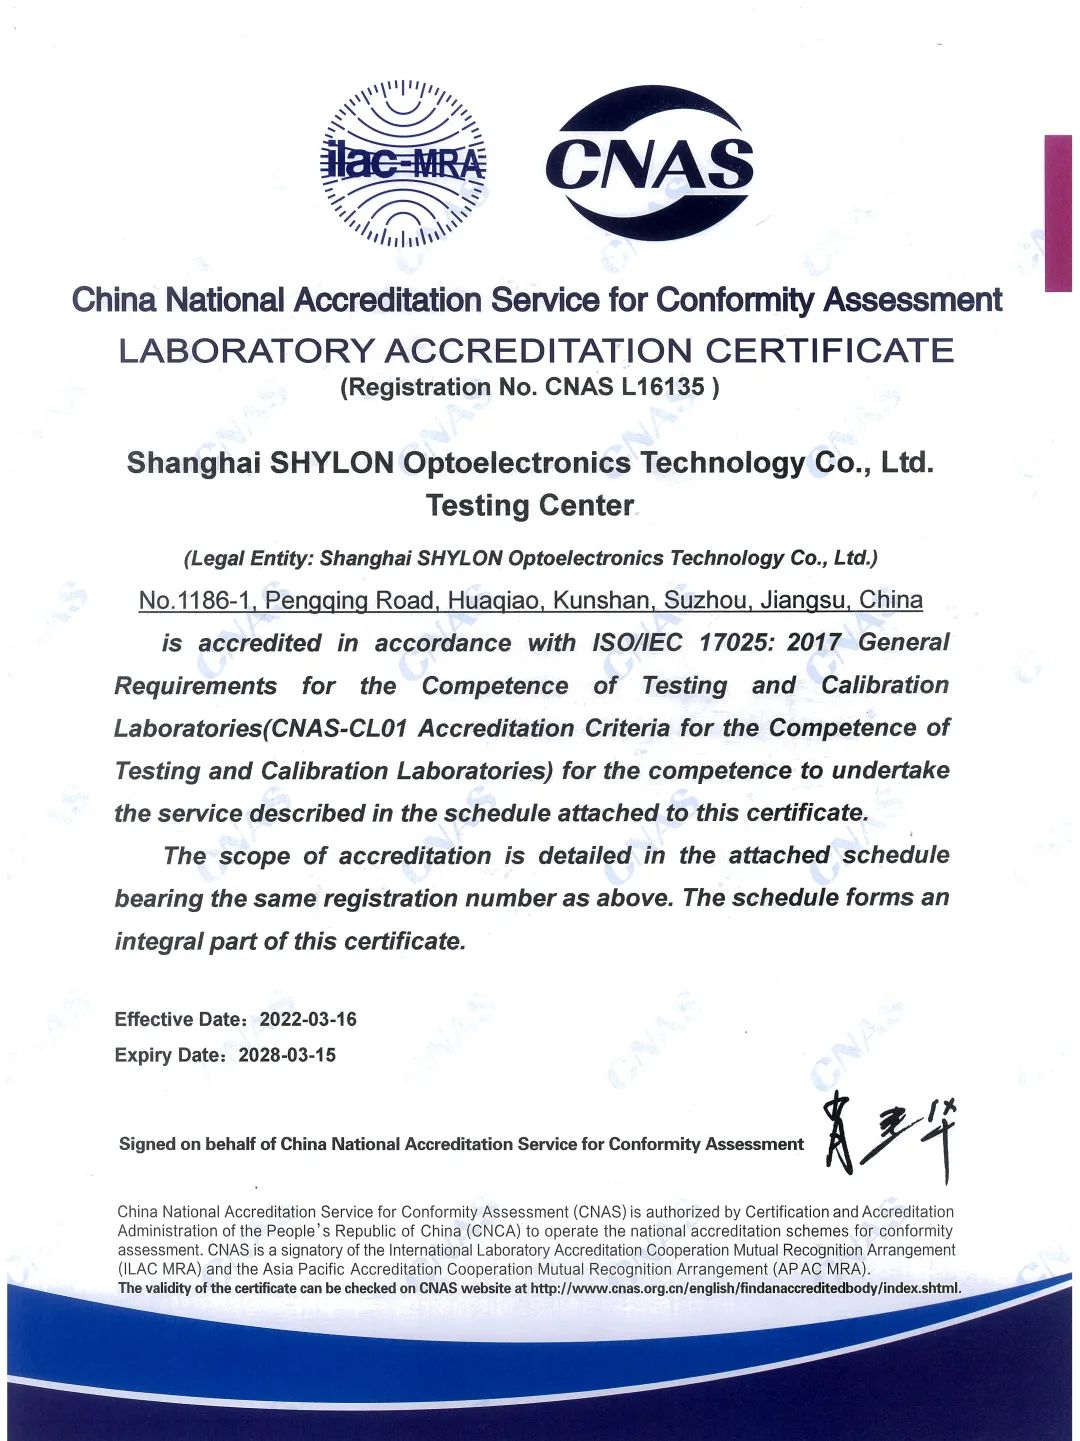 芯龙光电检测中心获CNAS认证